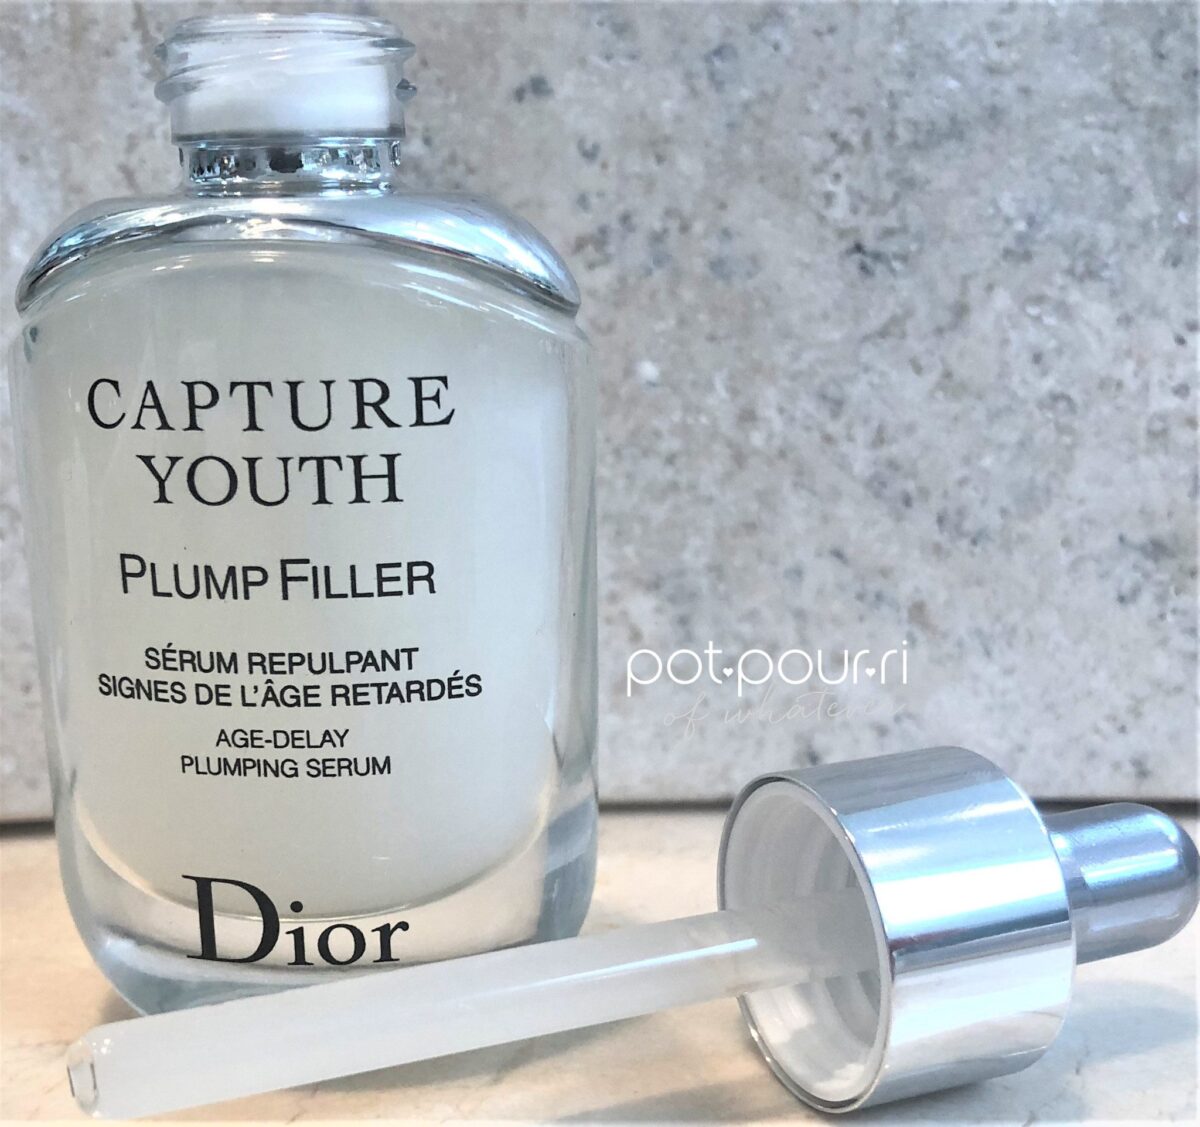 dior plump filler serum review